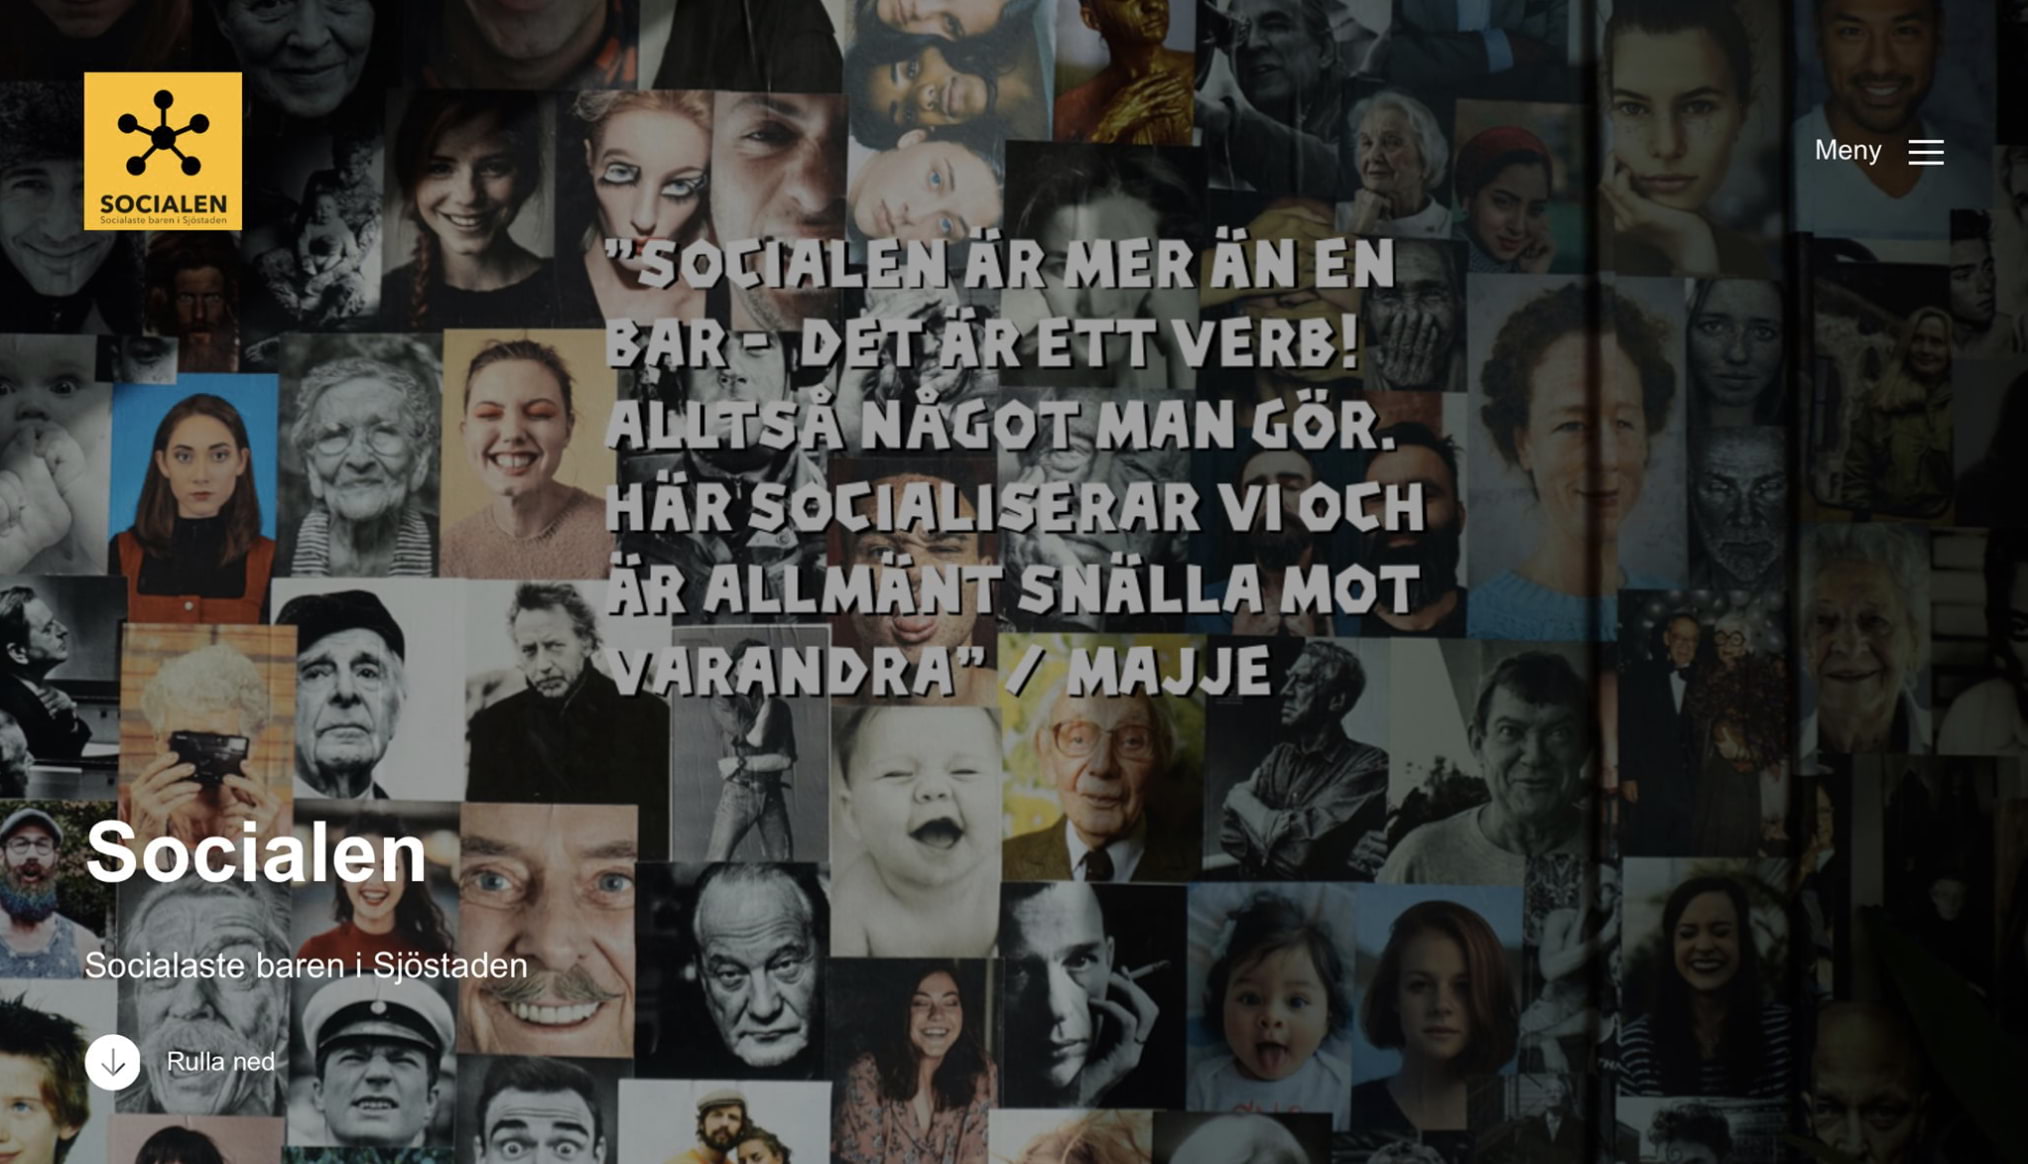 www.socialenbar.se – Photo from Socialen Bar by Joakim J. (19/07/2020)